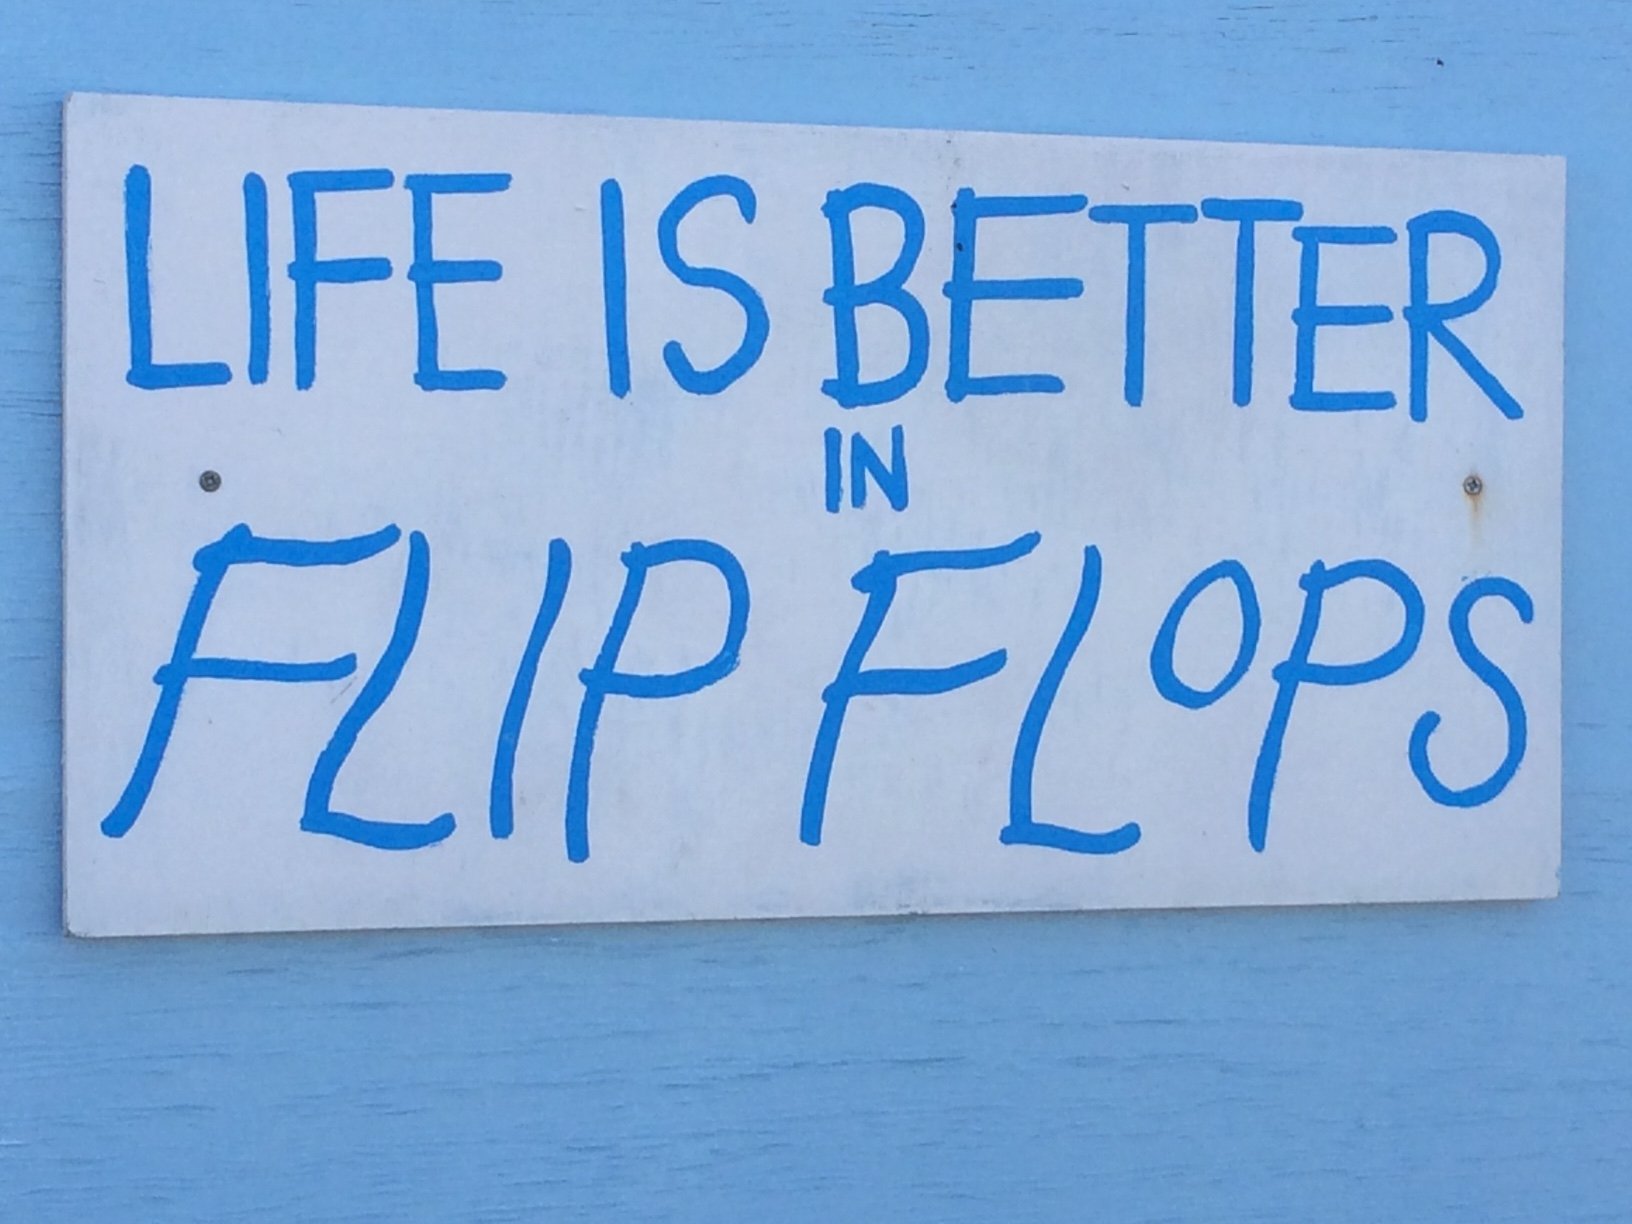 Life is better in flip flops